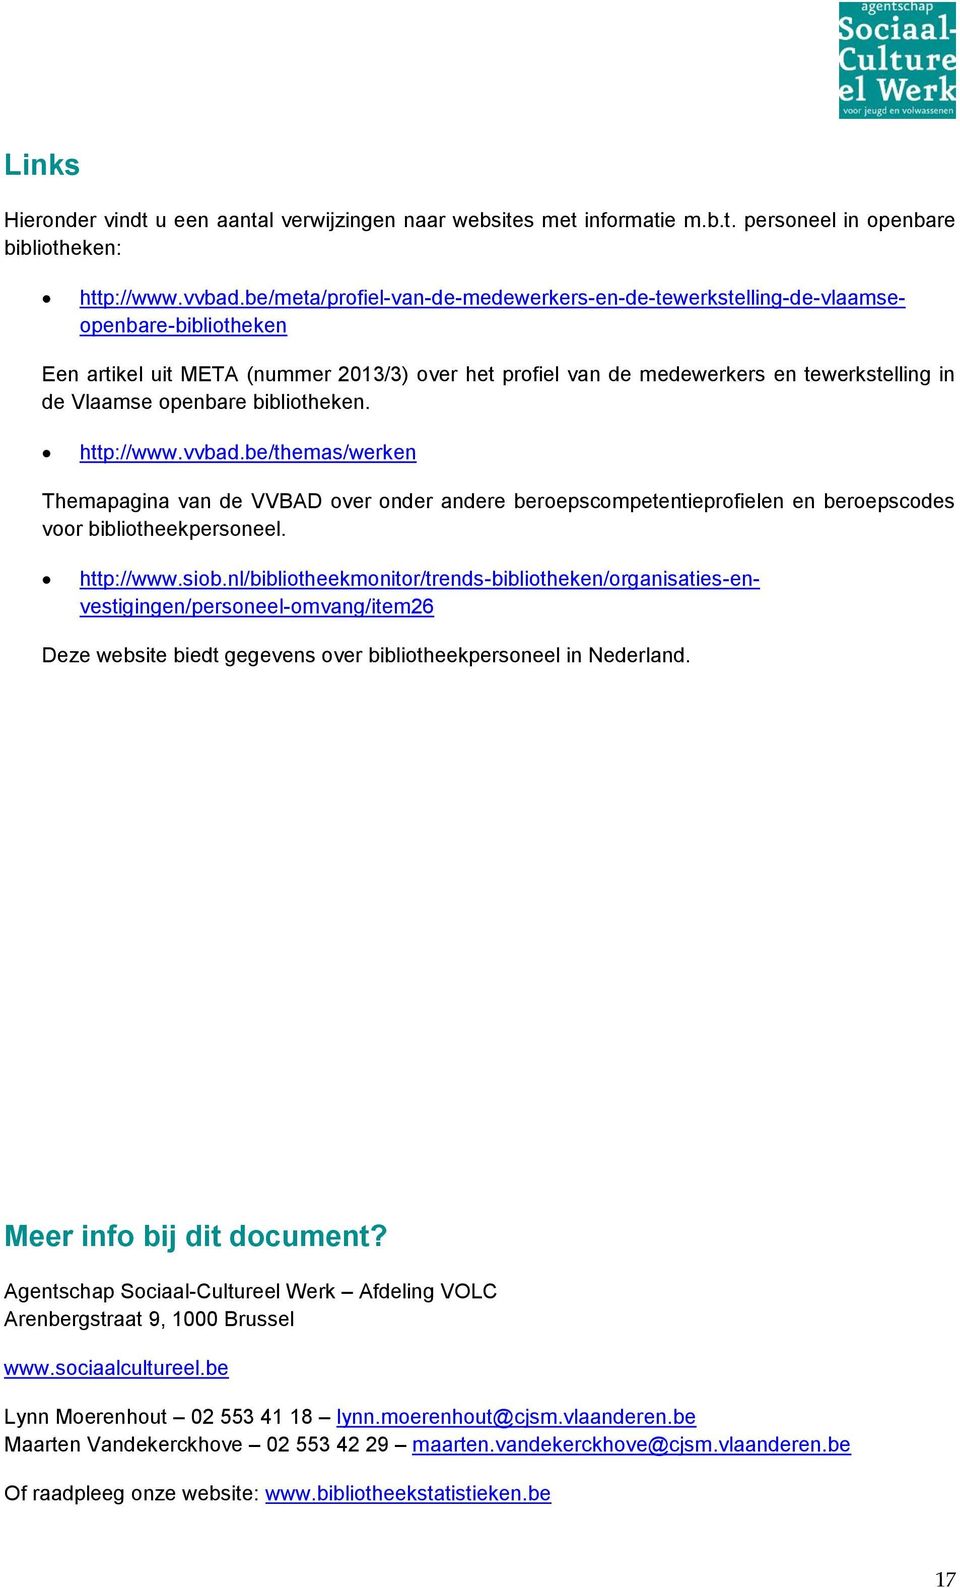 siob.nl/bibliotheekmonitor/trends-bibliotheken/organisaties-envestigingen/personeel-omvang/item26 Deze website biedt gegevens over bibliotheekpersoneel in Nederland. Meer info bij dit document?